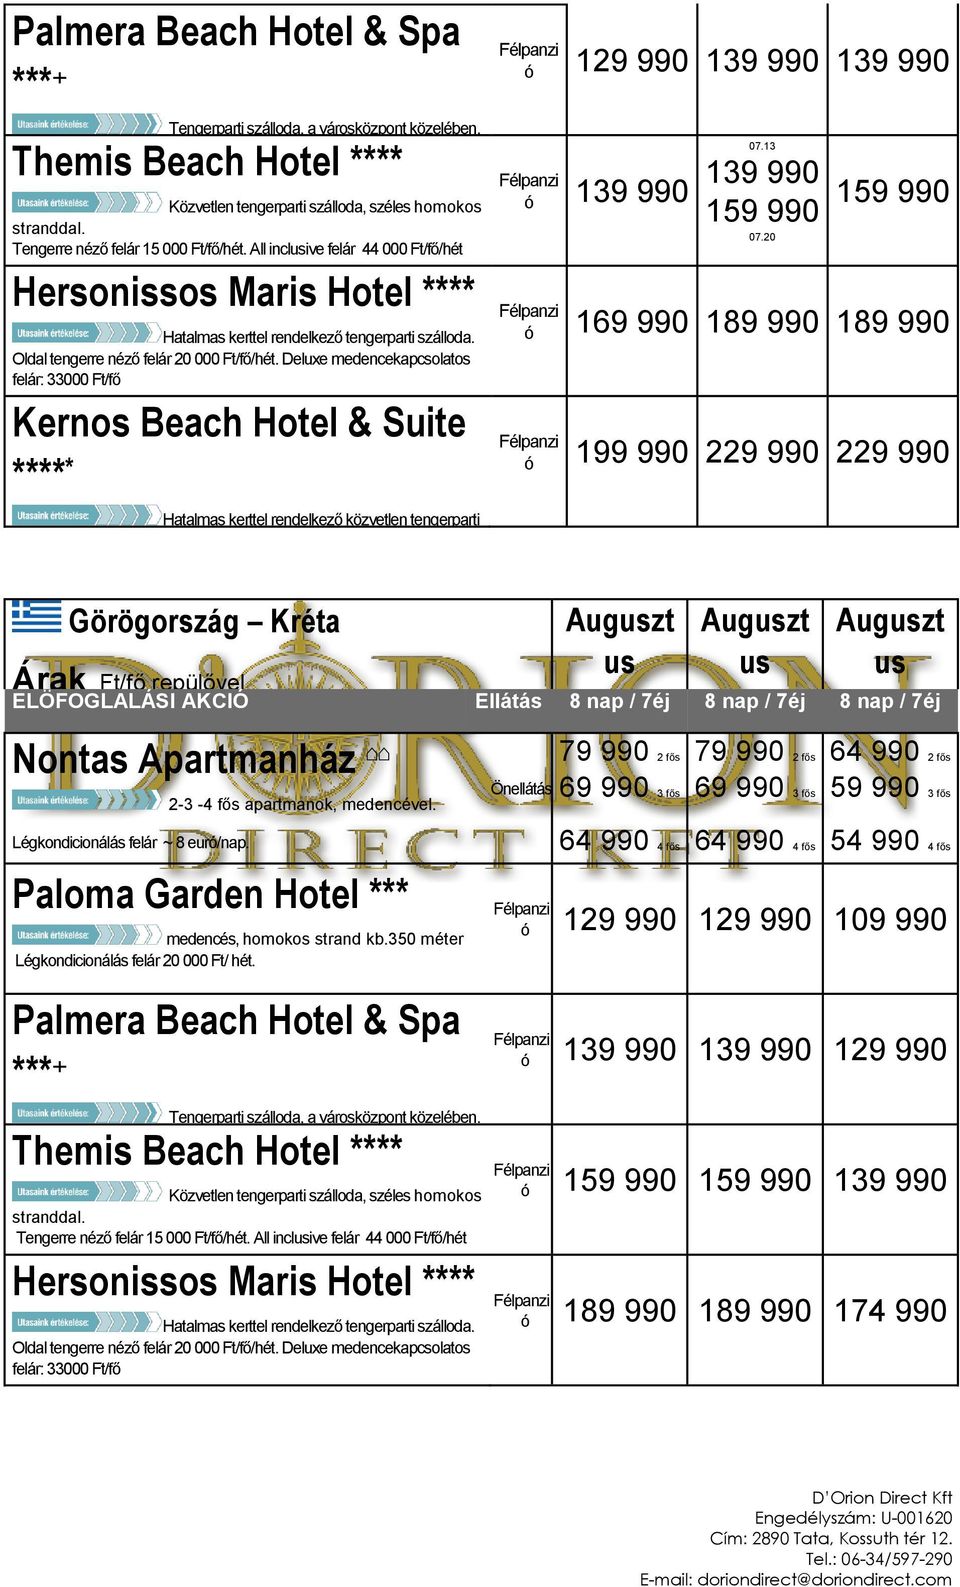 Tengerre néző felár 15 000 incluive felár 44 000 Ft/fő/hét Heronio Mari Hotel **** Hatalma kerttel rendelkező tengerparti zálloda.